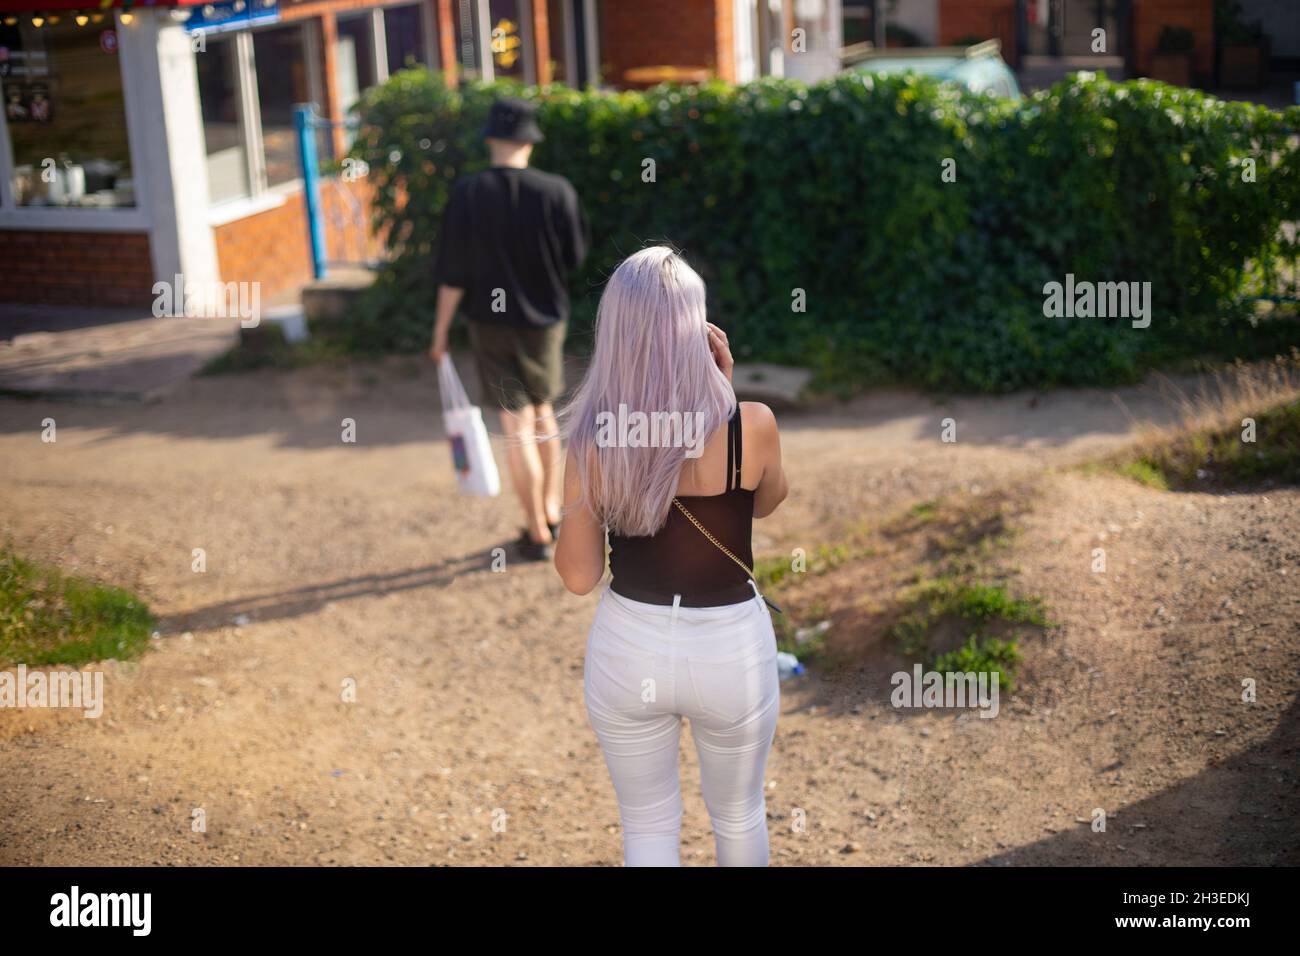 Die Menschen gehen entlang einer sandigen Straße mit eingestreuten Grünflächen im Park. Ein Mädchen mit lila Haaren, in weißen Hosen und einem schwarzen T-Shirt, ein Blick von hinten Stockfoto